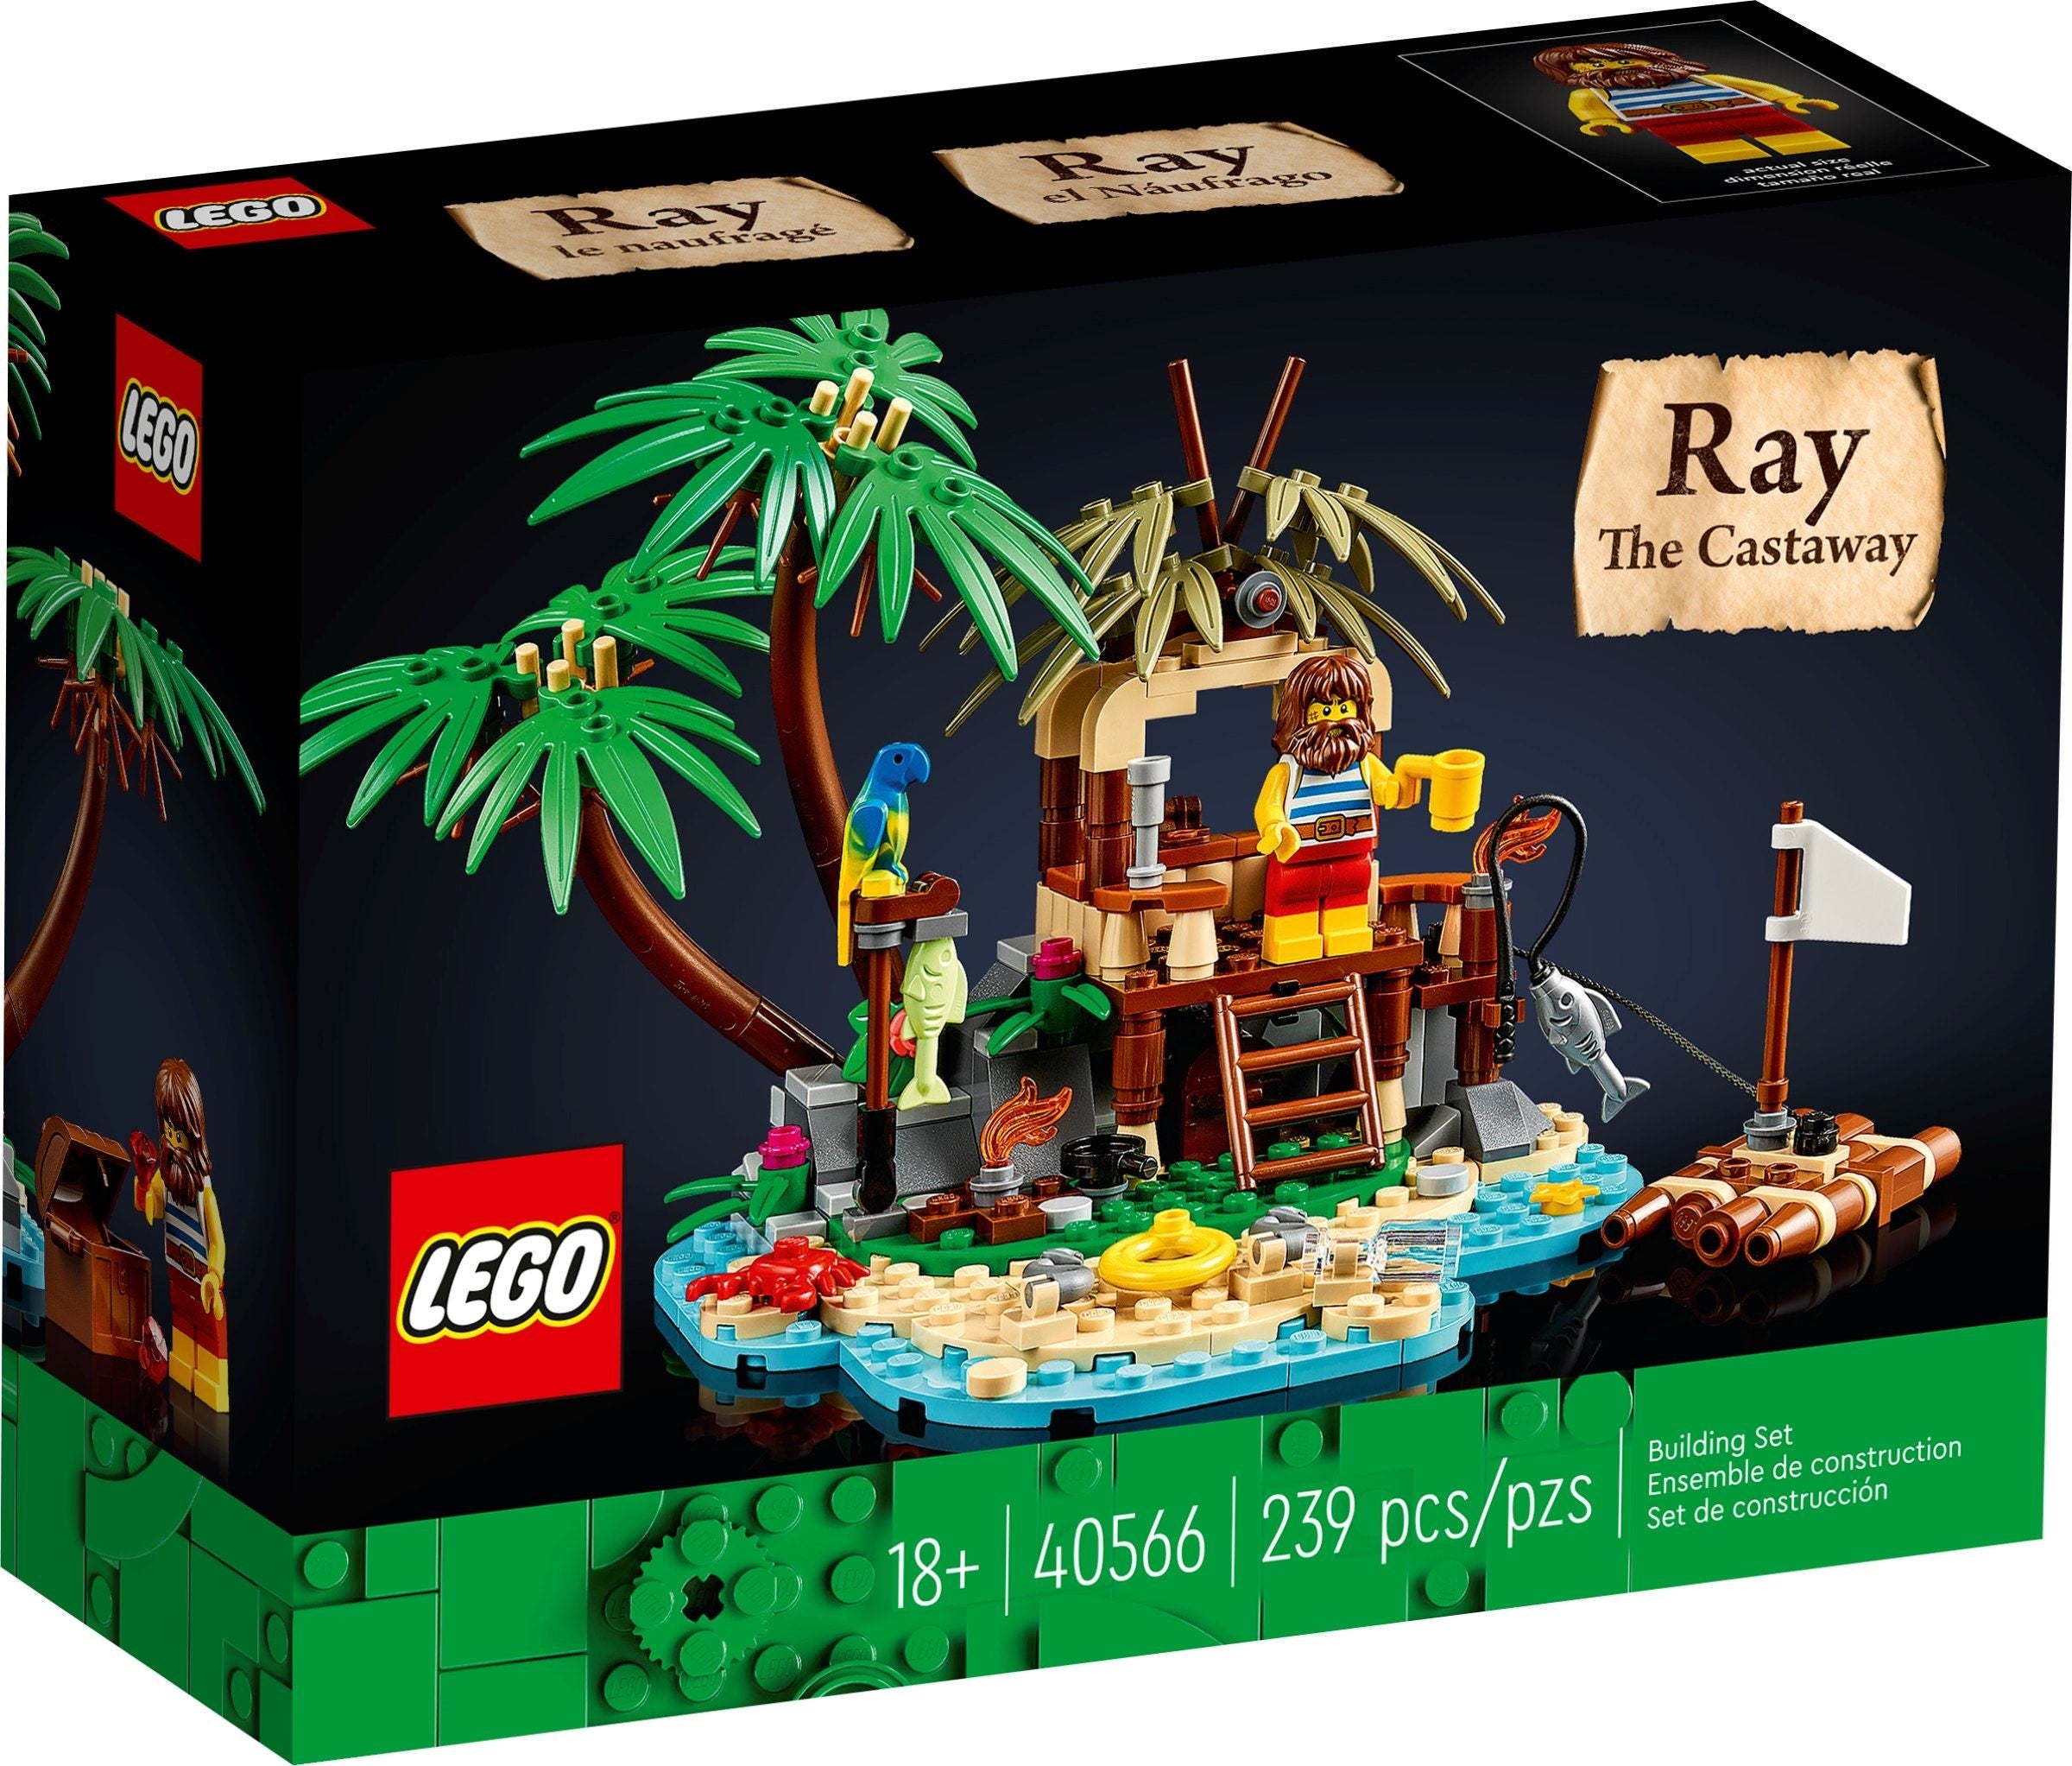 Lego Ideas 40566 - Ray the Castaway